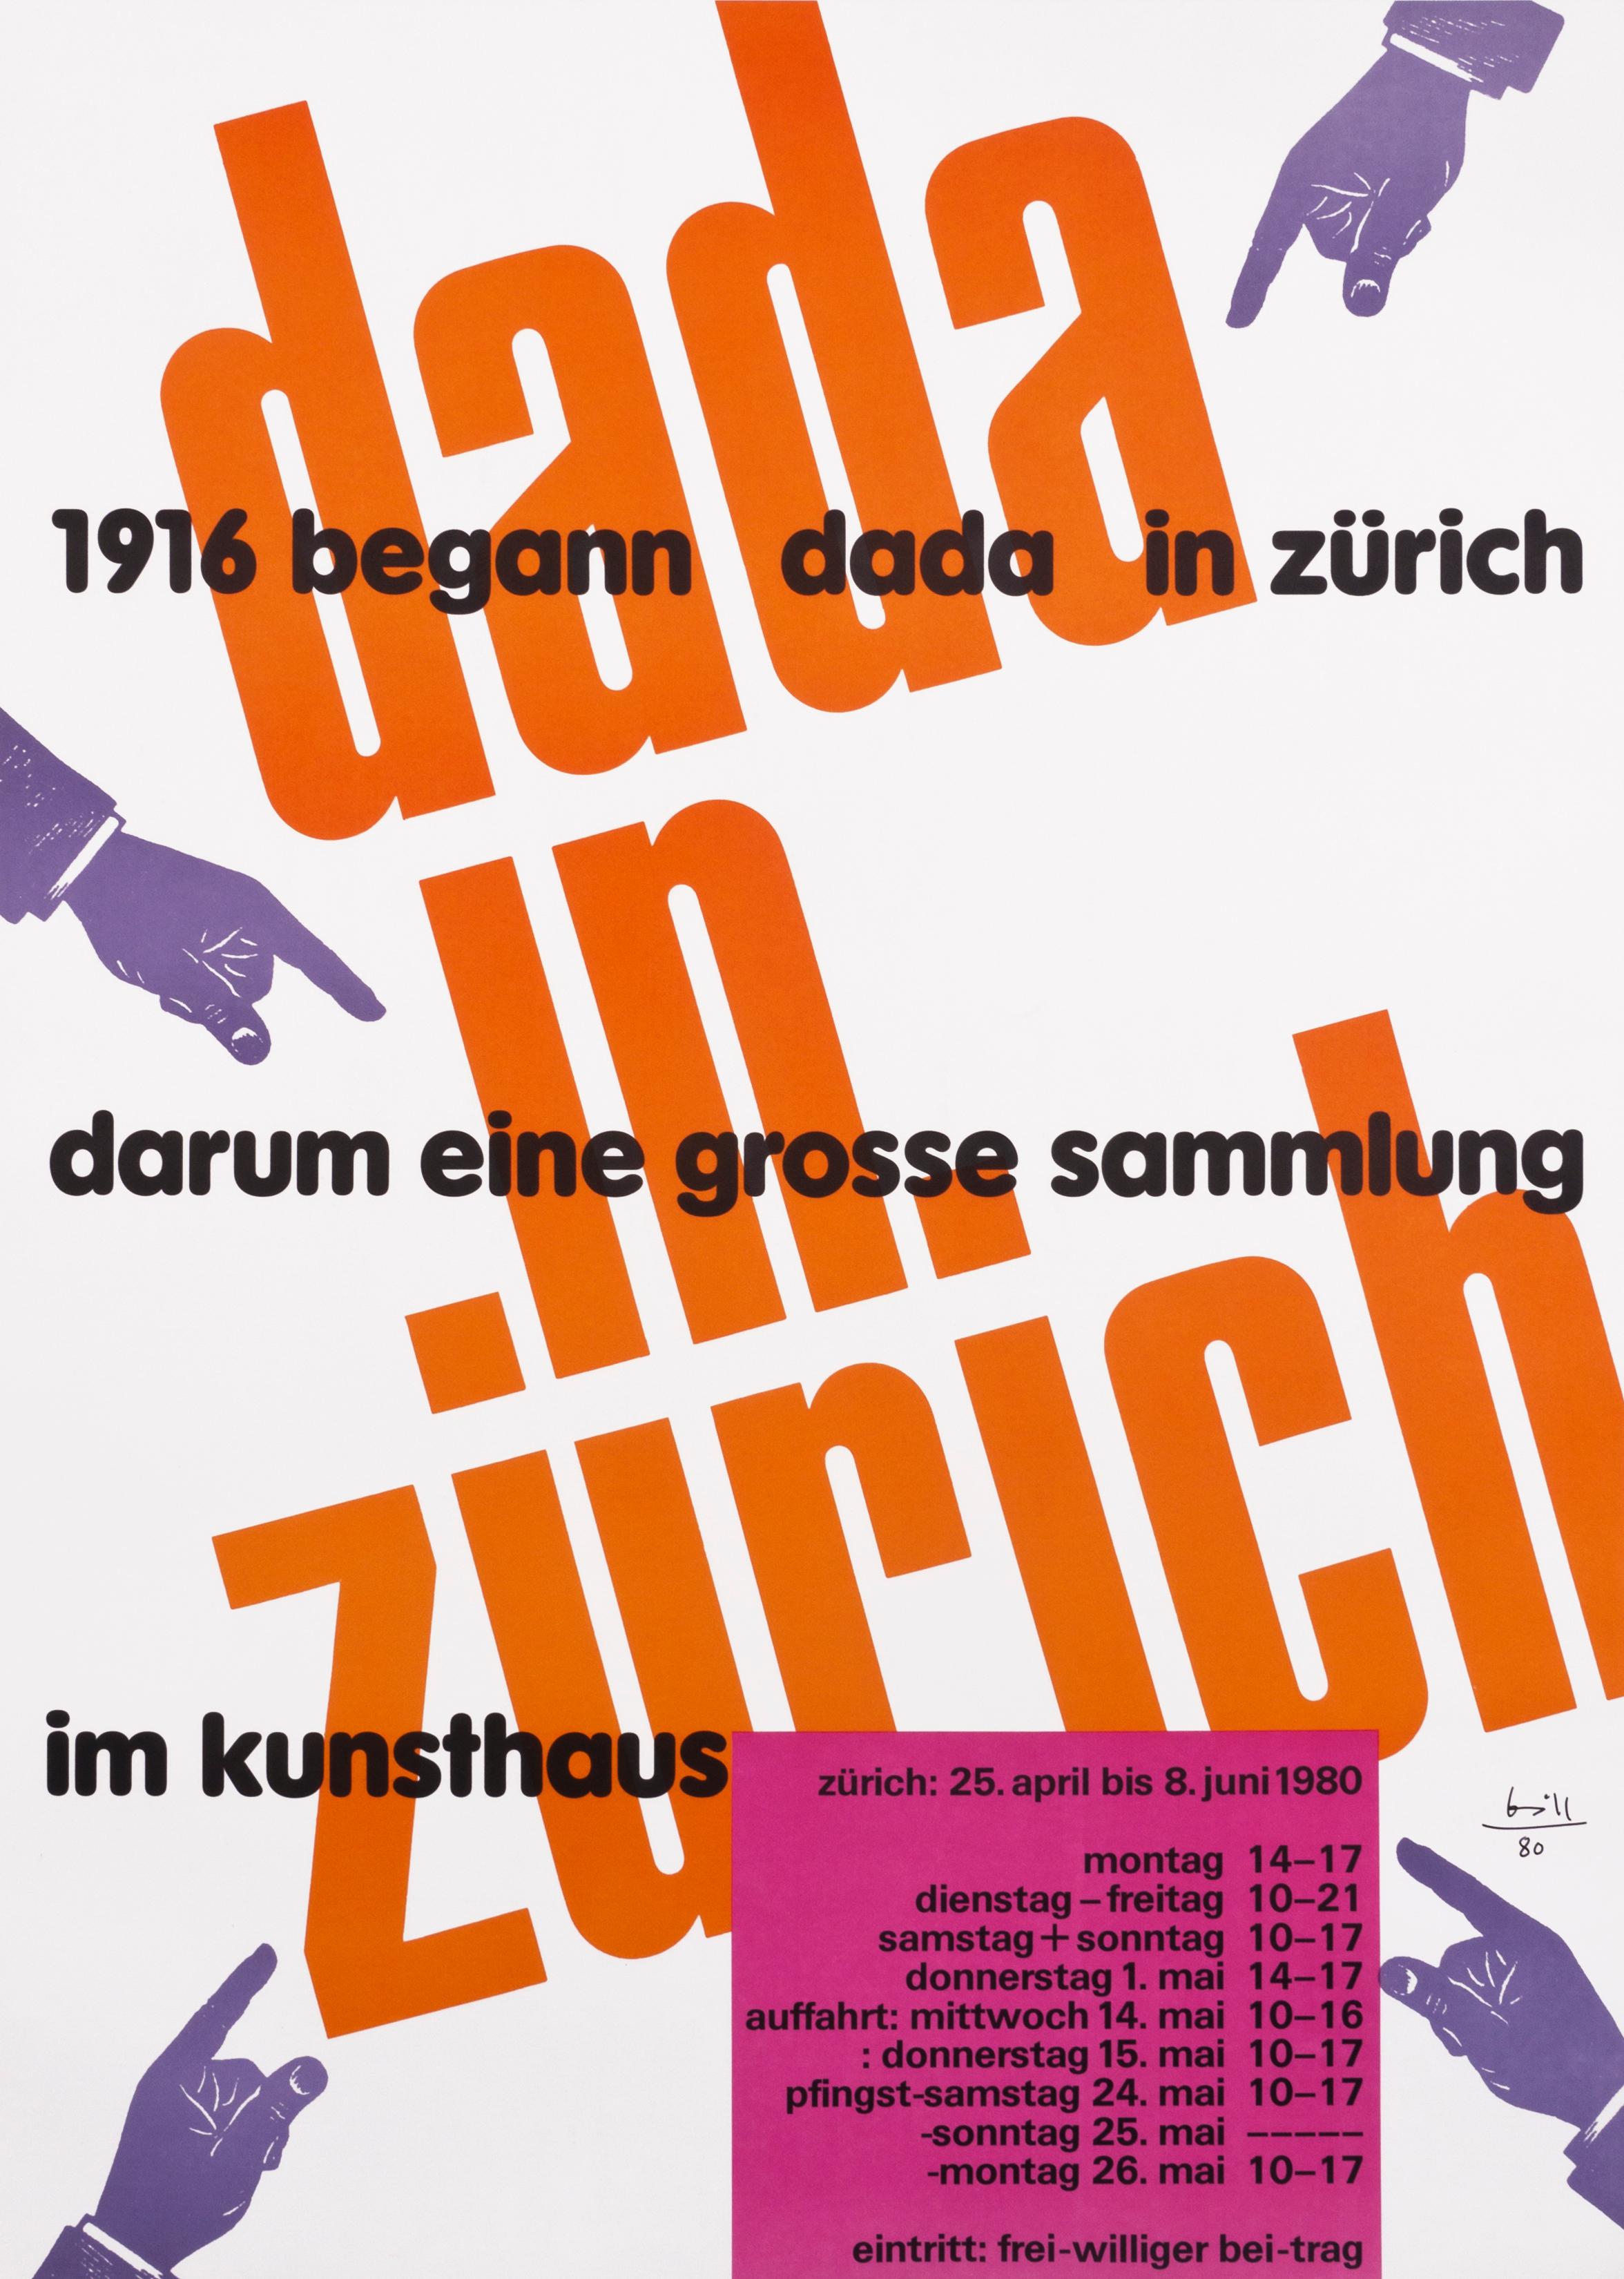 Max Bill Print - "Dada in Zurich" Original Vintage Art Swiss Museum Exhibition Typography Poster